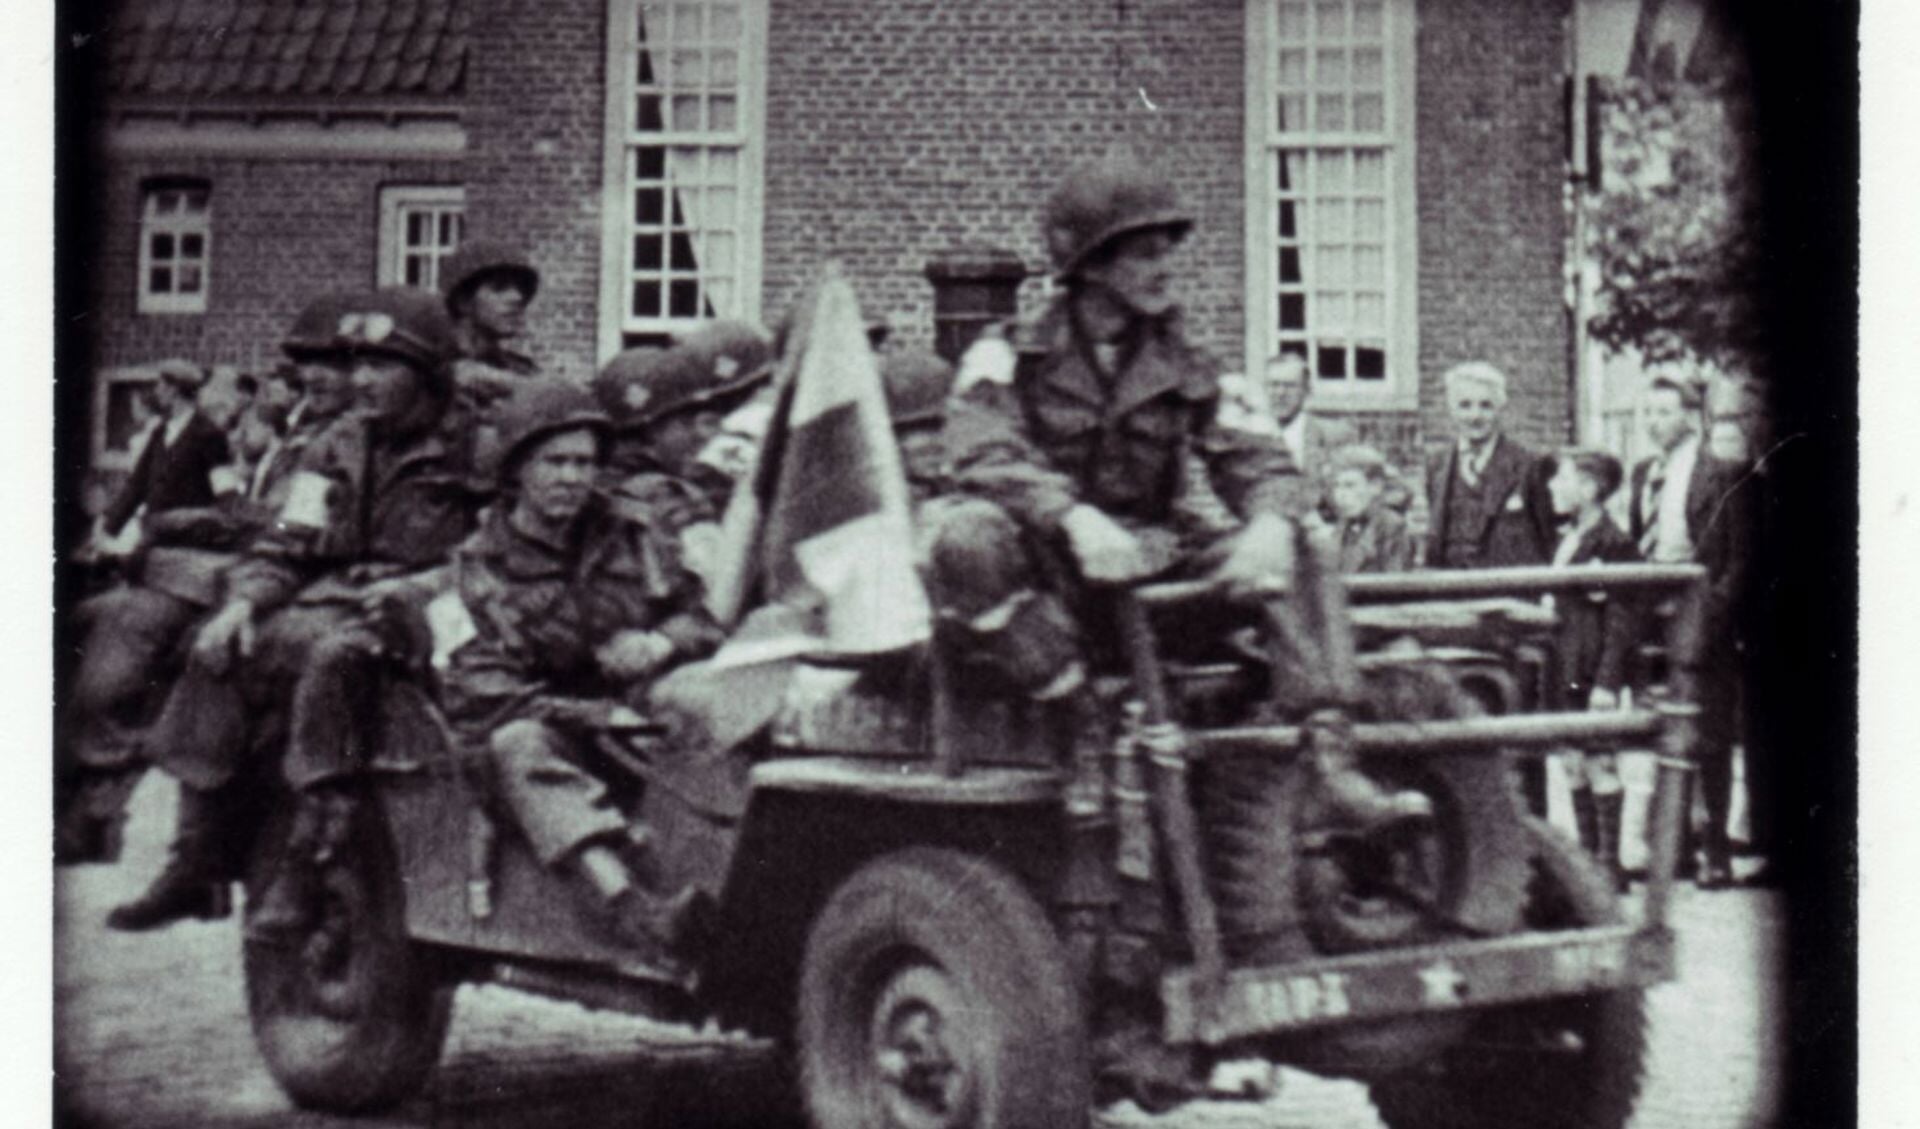  Still uit de film “Bevrijding Son, 17 september 1944”. 